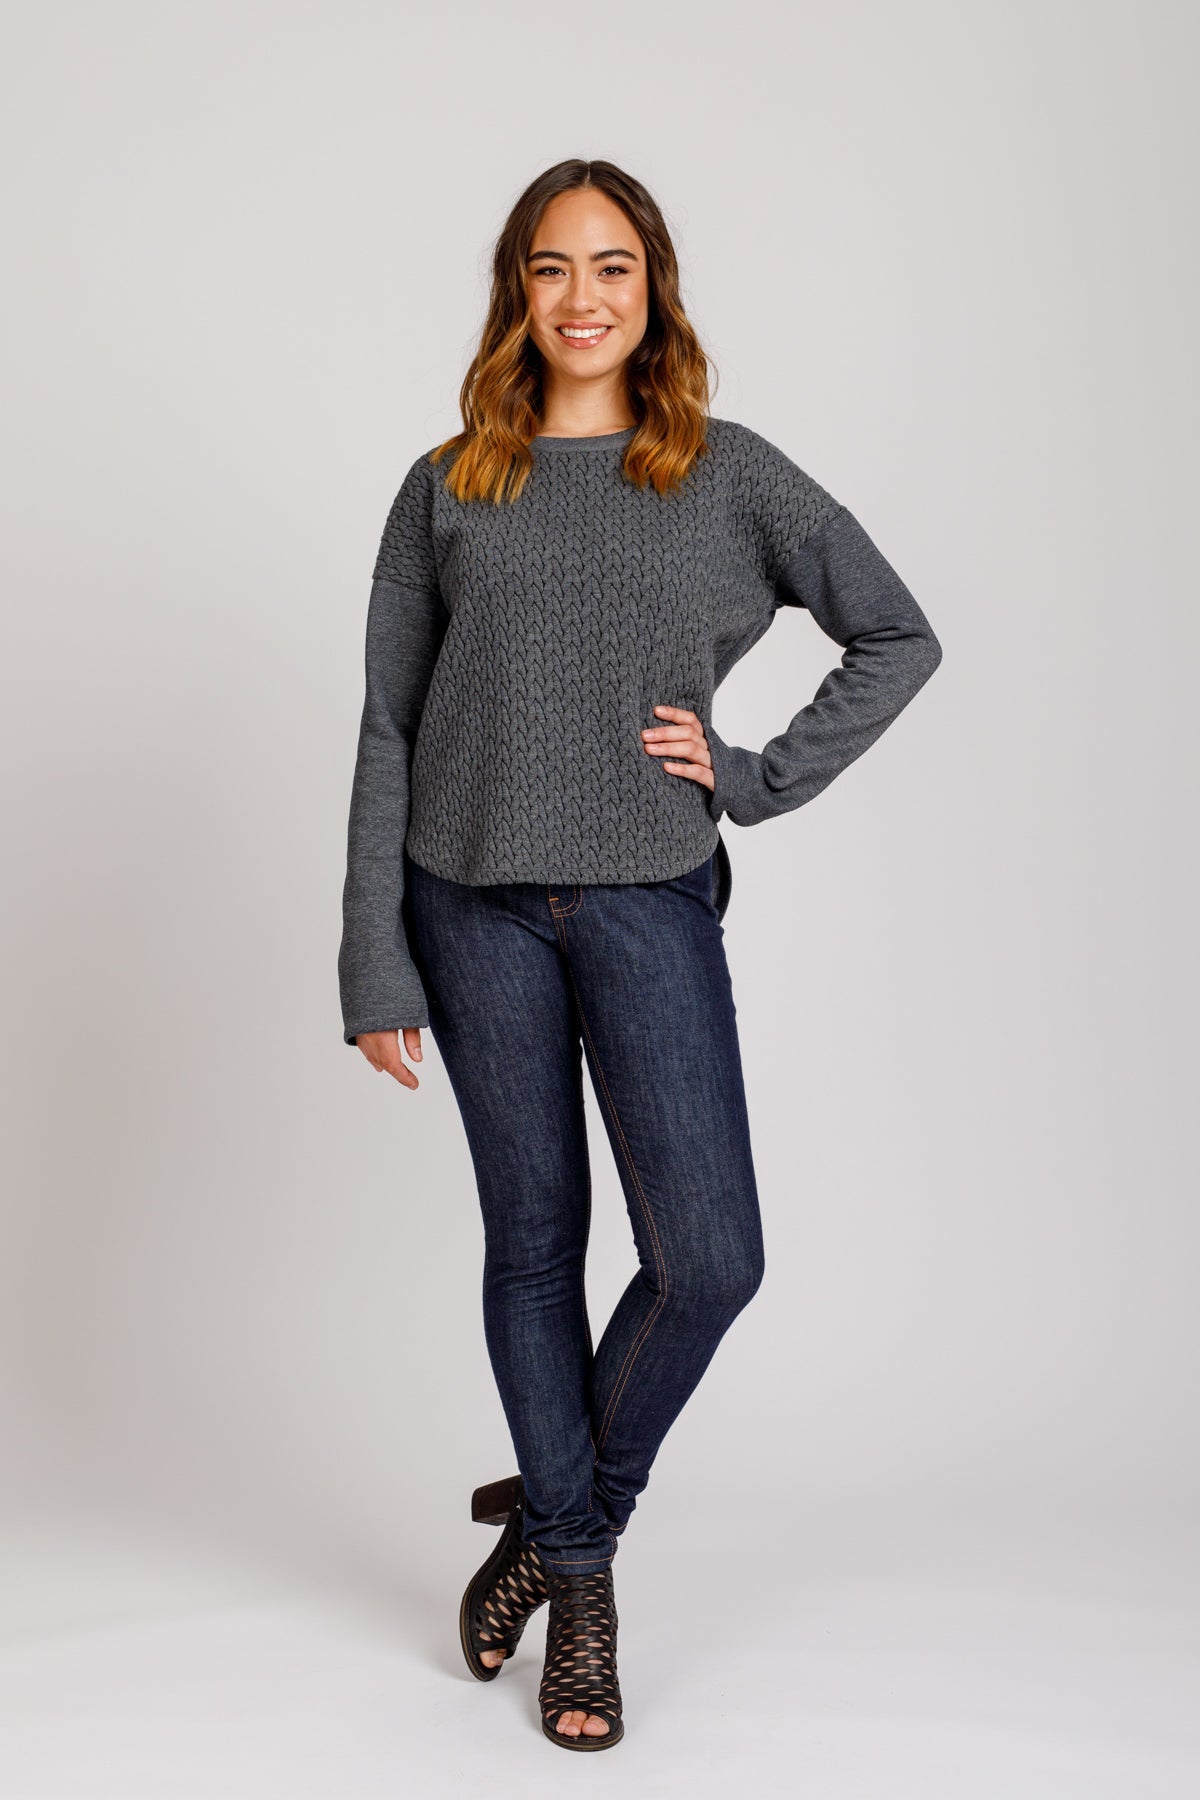 Megan Nielsen - Jarrah Sweater | Core Fabrics